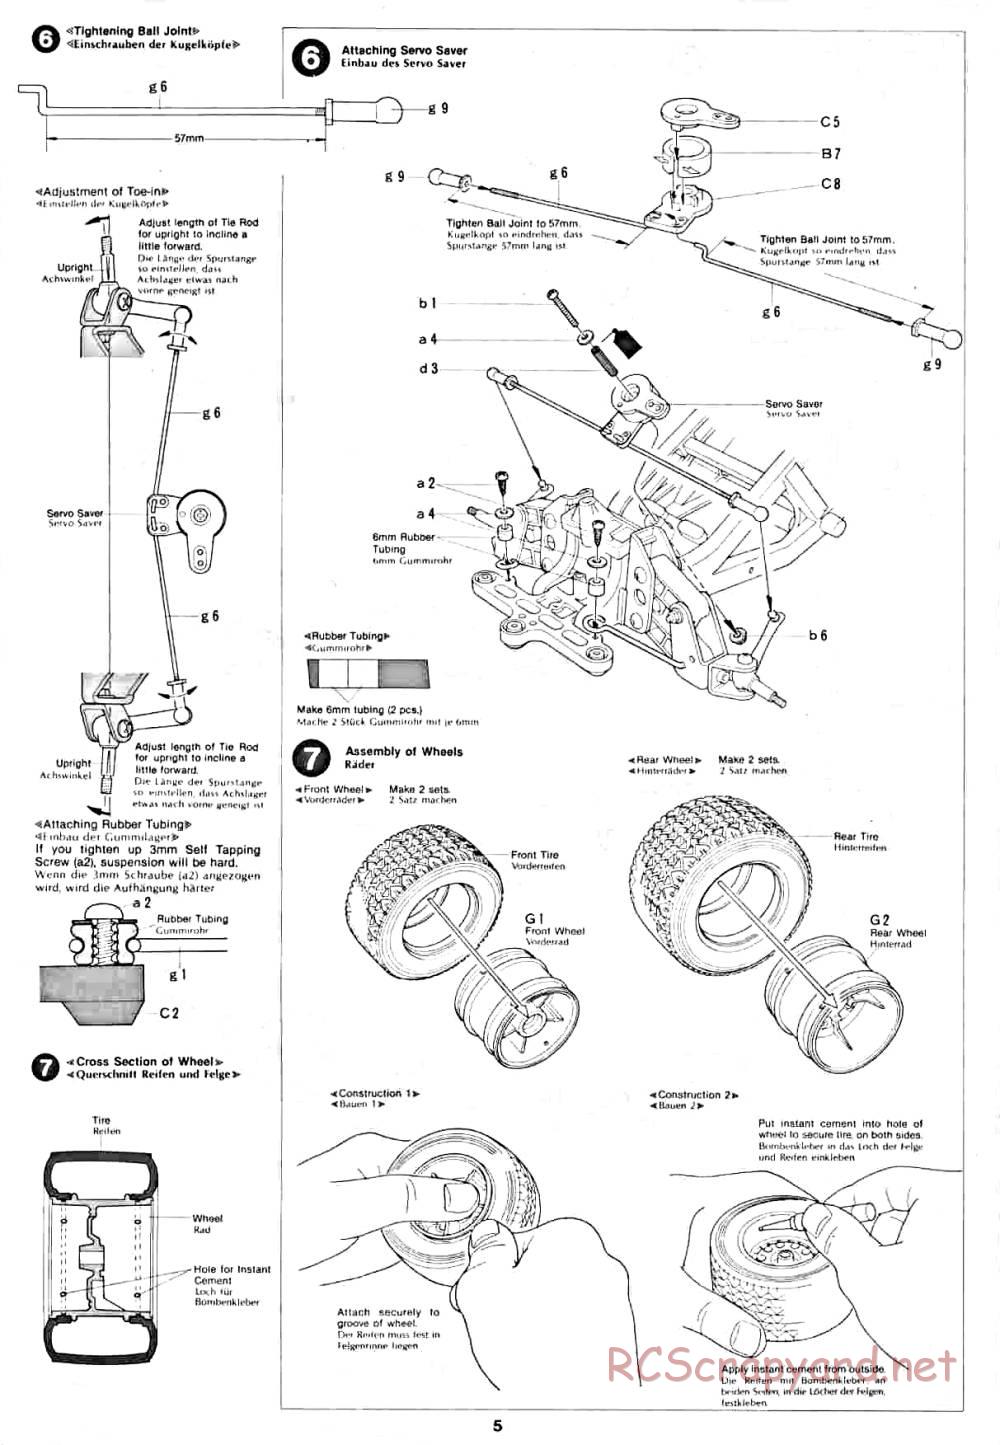 Tamiya - Lancia Rally - 58040 - Manual - Page 5